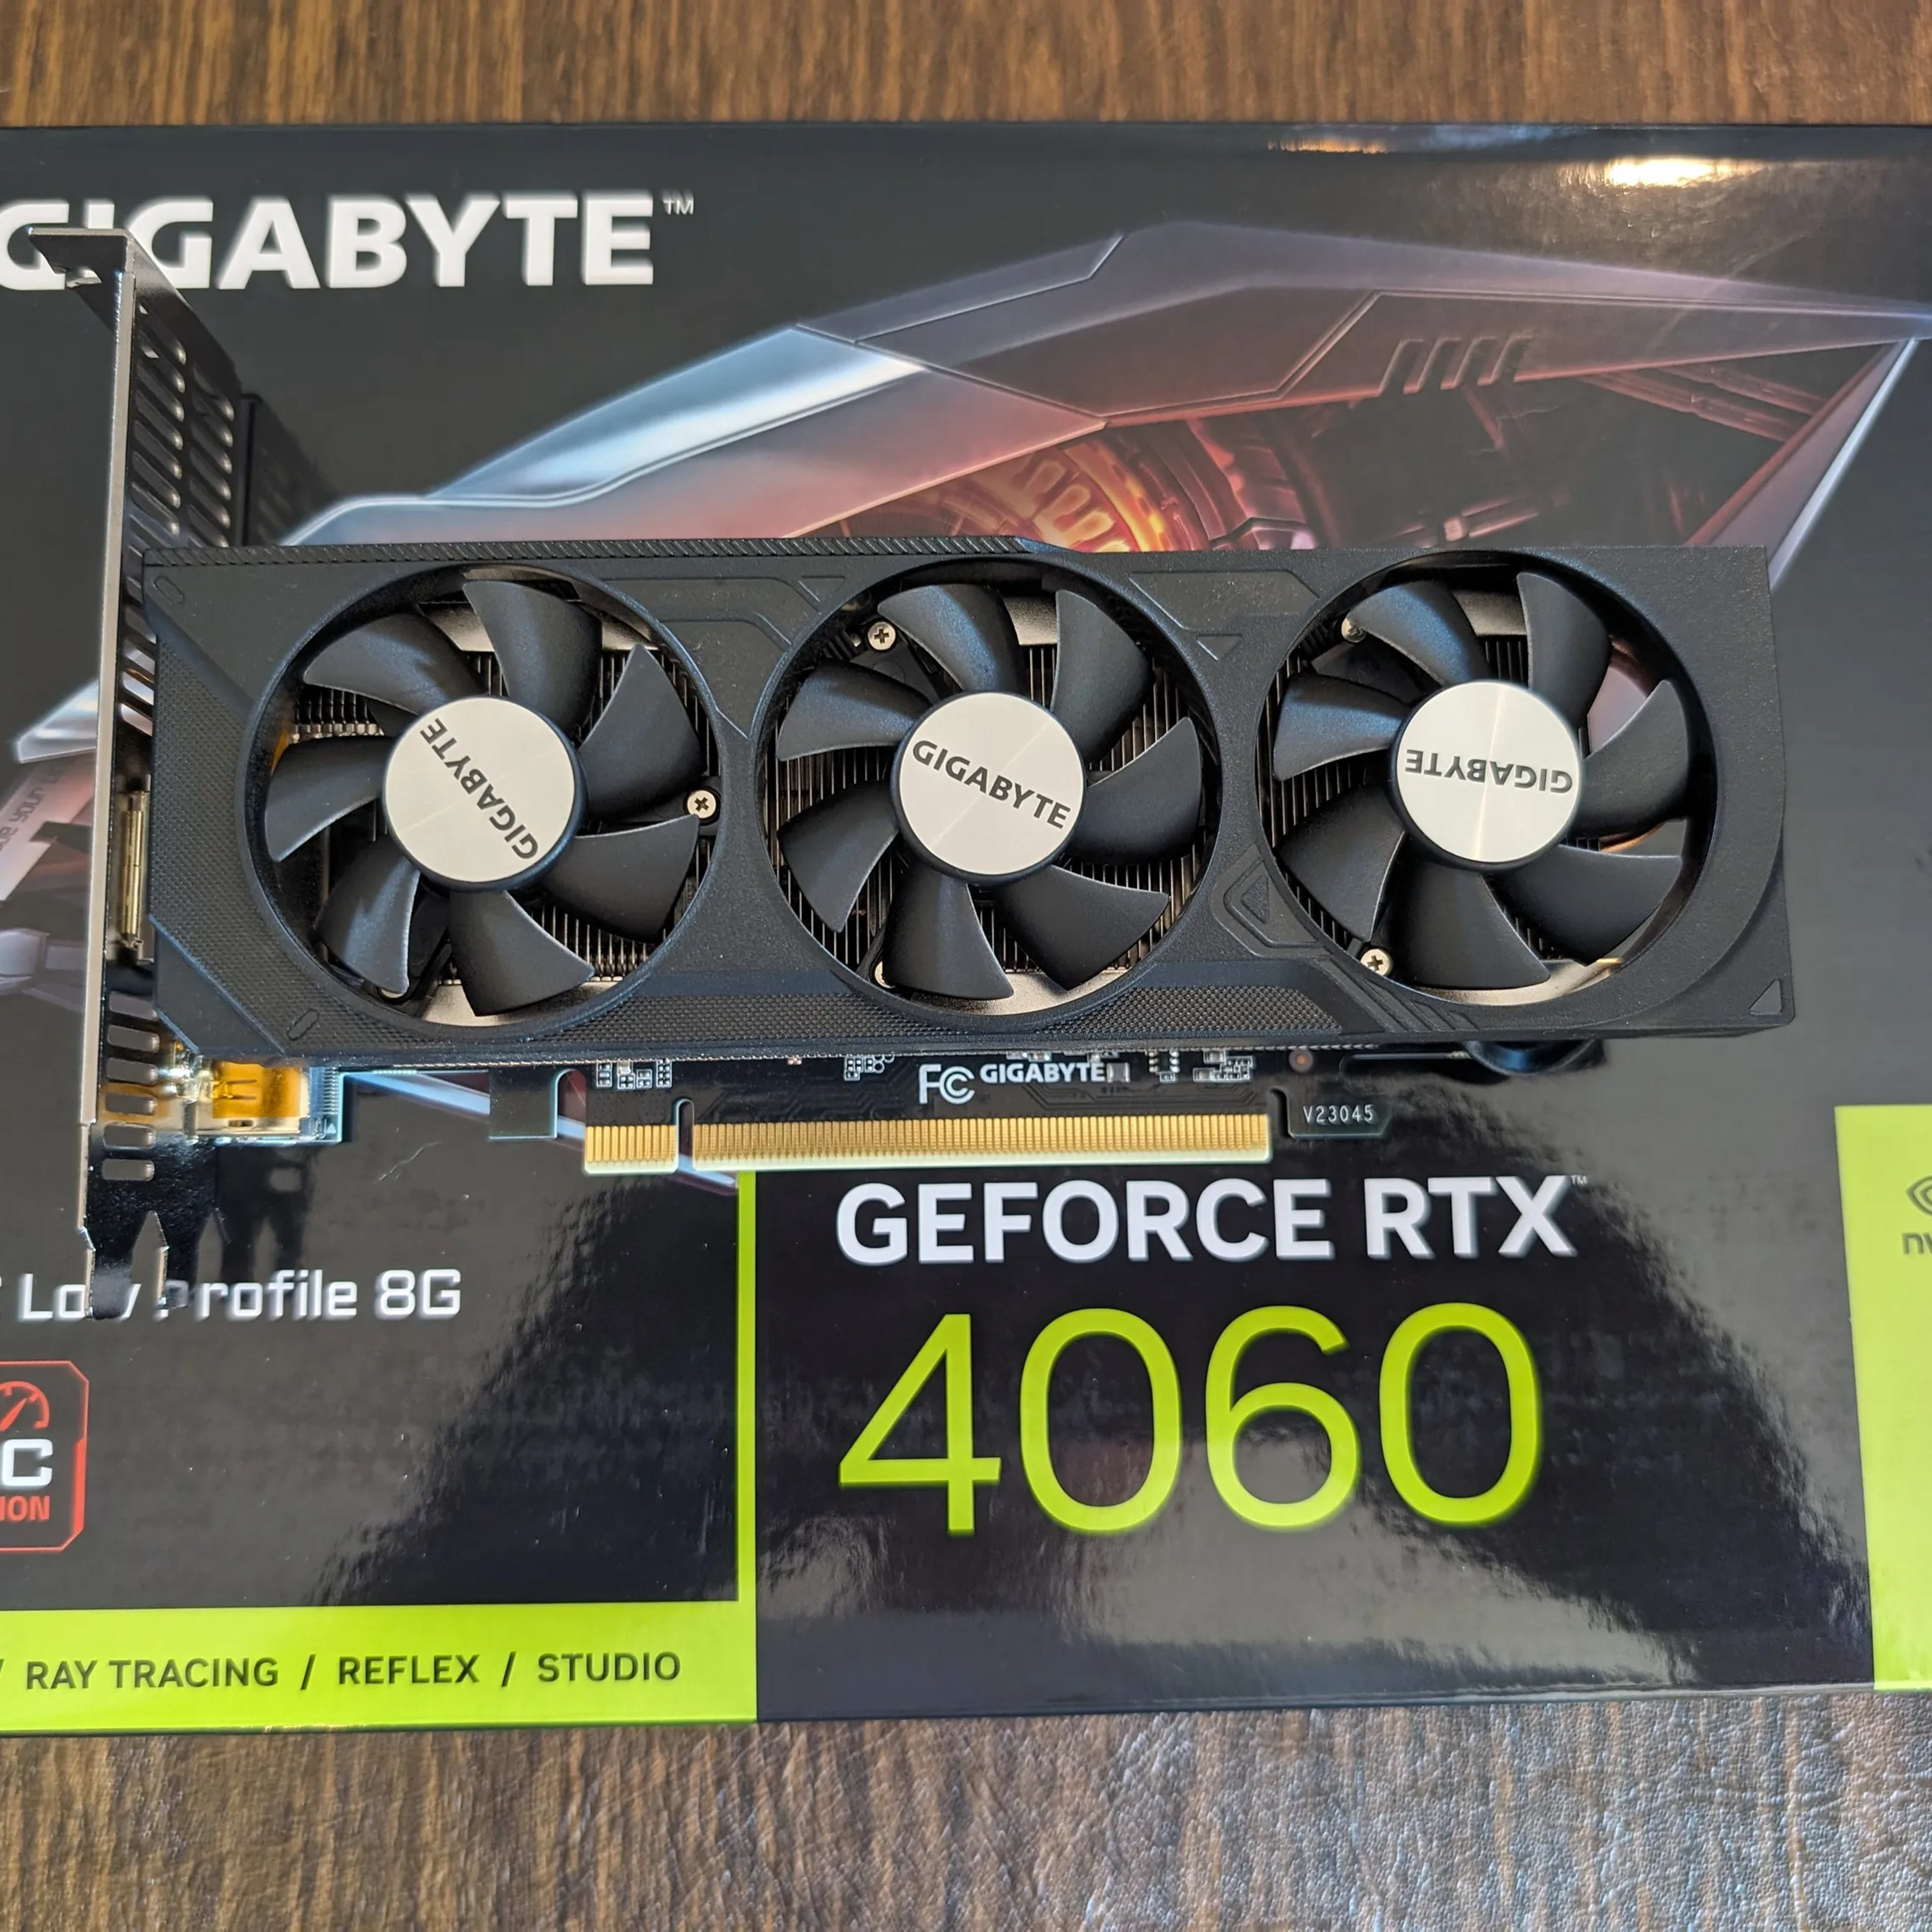 Gigabyte Nvidia GeForce RTX 4060 OC Low Profile 8G - USED Like New